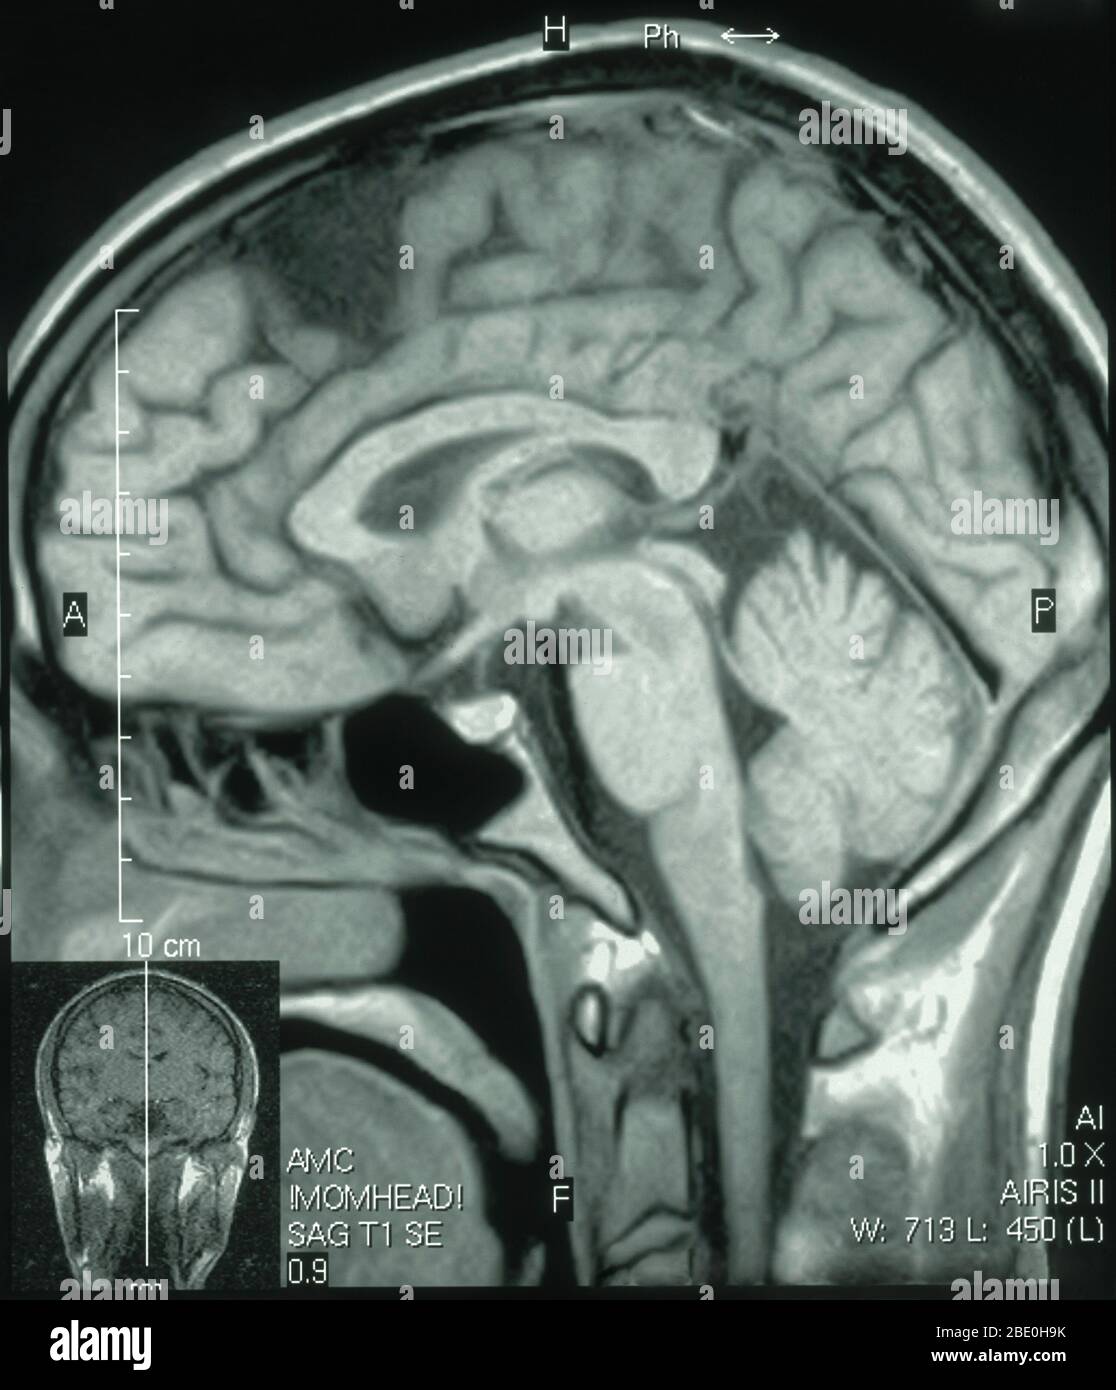 RM del cerebro (vista sagital) de un varón de 26 años. La resonancia magnética se tomó como resultado de una lesión en la cabeza en un accidente de automóvil. El diagnóstico de la IRM es un pequeño quiste aracnoideo en la región frontal izquierda anterior parasigital. Todos los demás aspectos parecen normales. Foto de stock